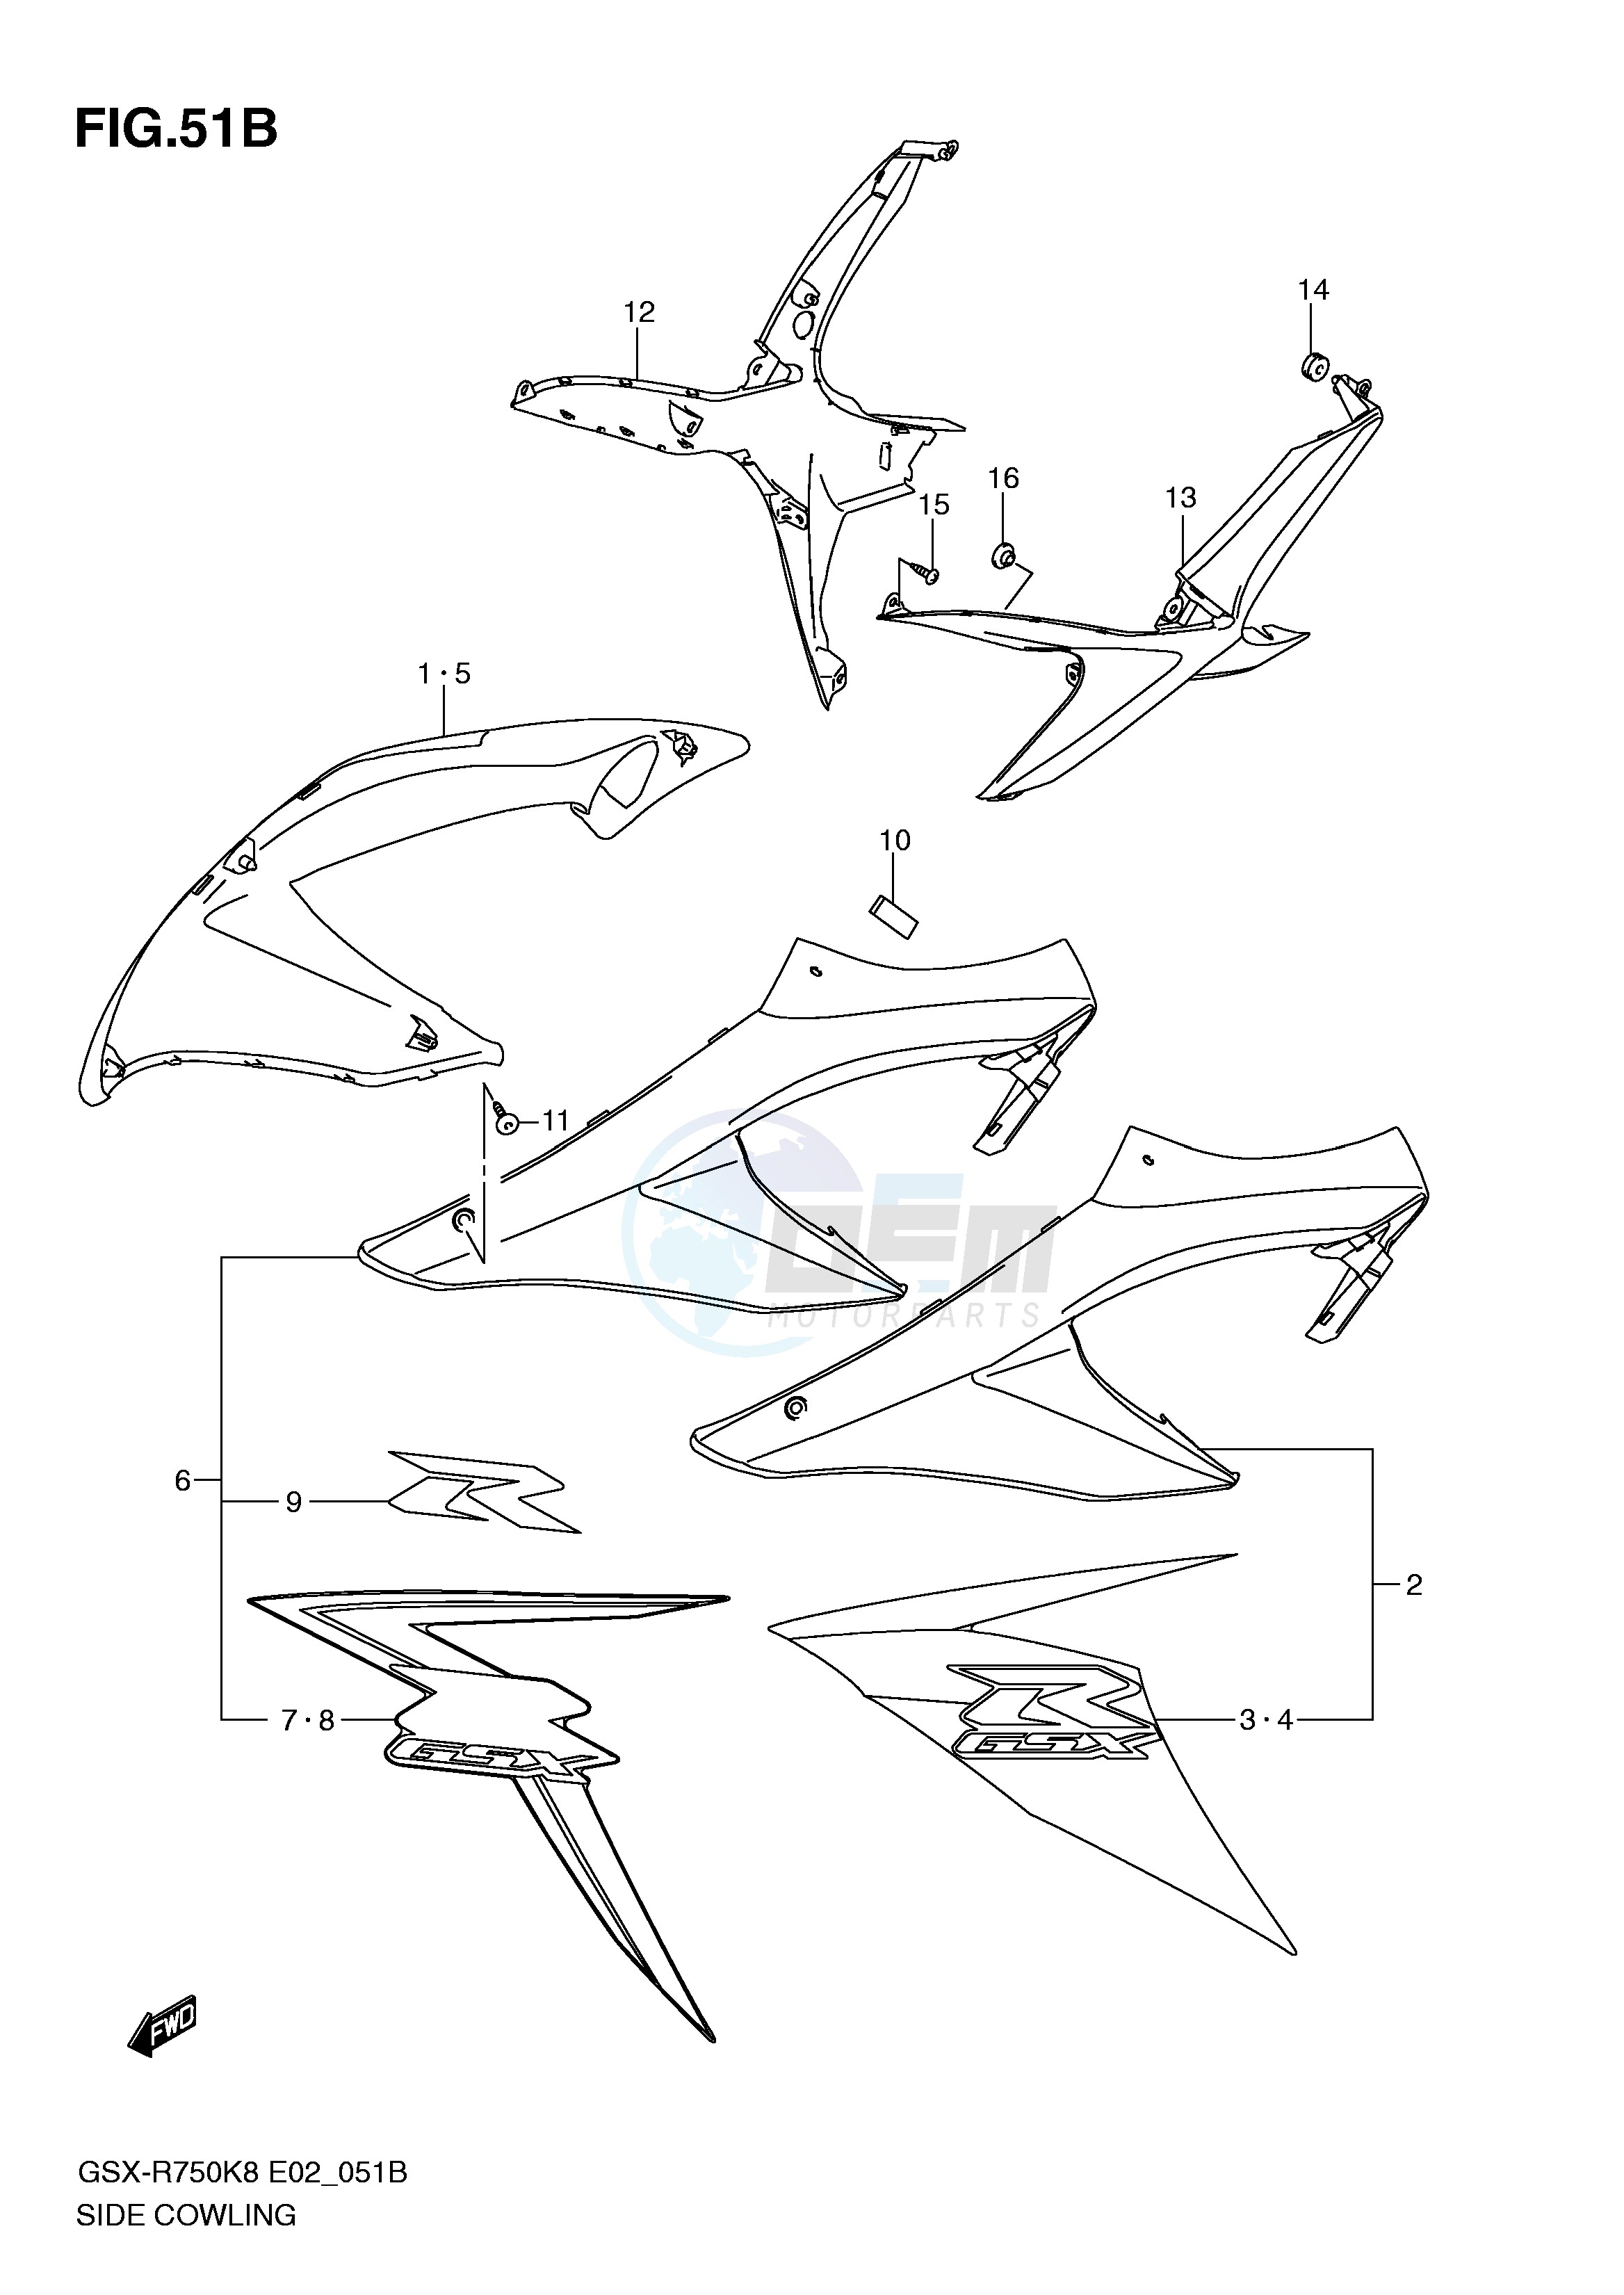 SIDE COWLING (MODEL L0) blueprint